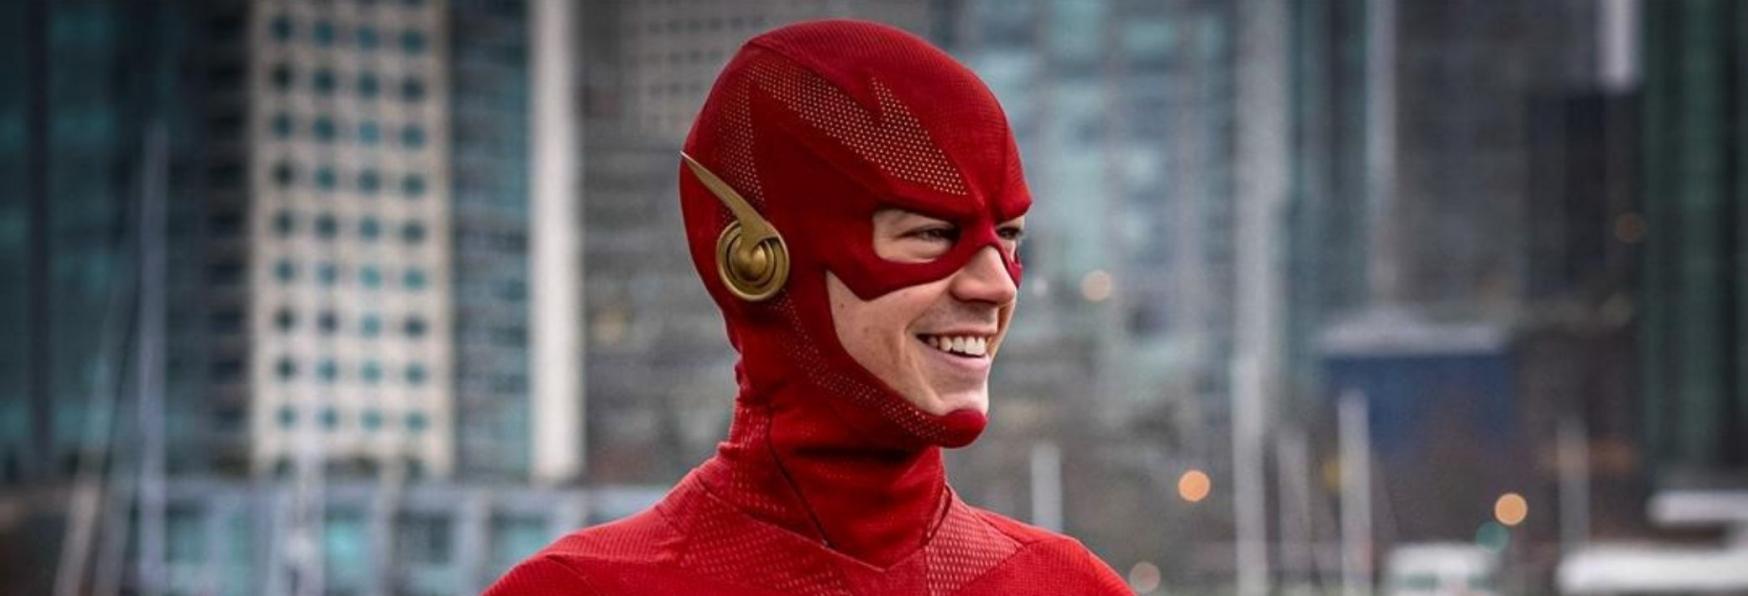 Vedremo degli Spin-off di The Flash? Il Commento dello Sceneggiatore